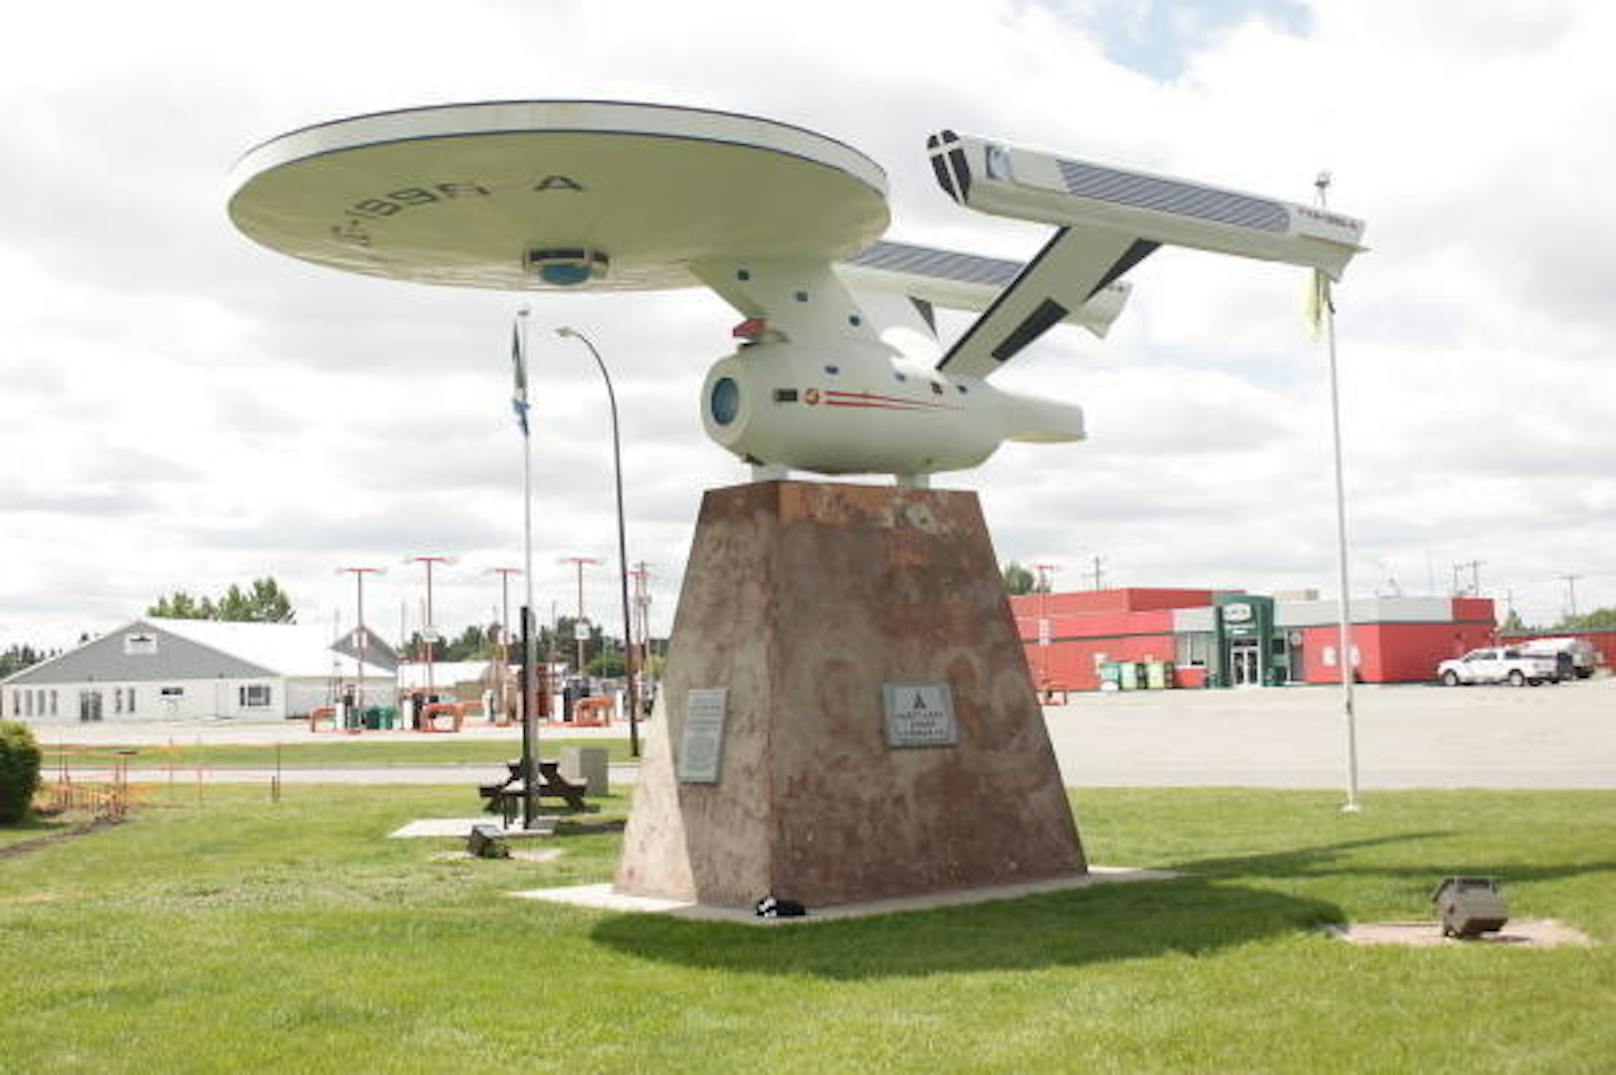 <b>Vulcan, Alberta (Kanada)</b>: In diesem kleinen Städtchen in der Nähe von Calgary dreht sich alles um "Star Trek". So gibt es eine Staute des Raumschiffs Enterprise und die Tourismusbüros sind ganz im Stil der Fernsehserie dekoriert. Trekkies finden hier zudem Fanartikel, Spiele und jedes Jahr Anfang August findet hier die Messe Spock Days statt.